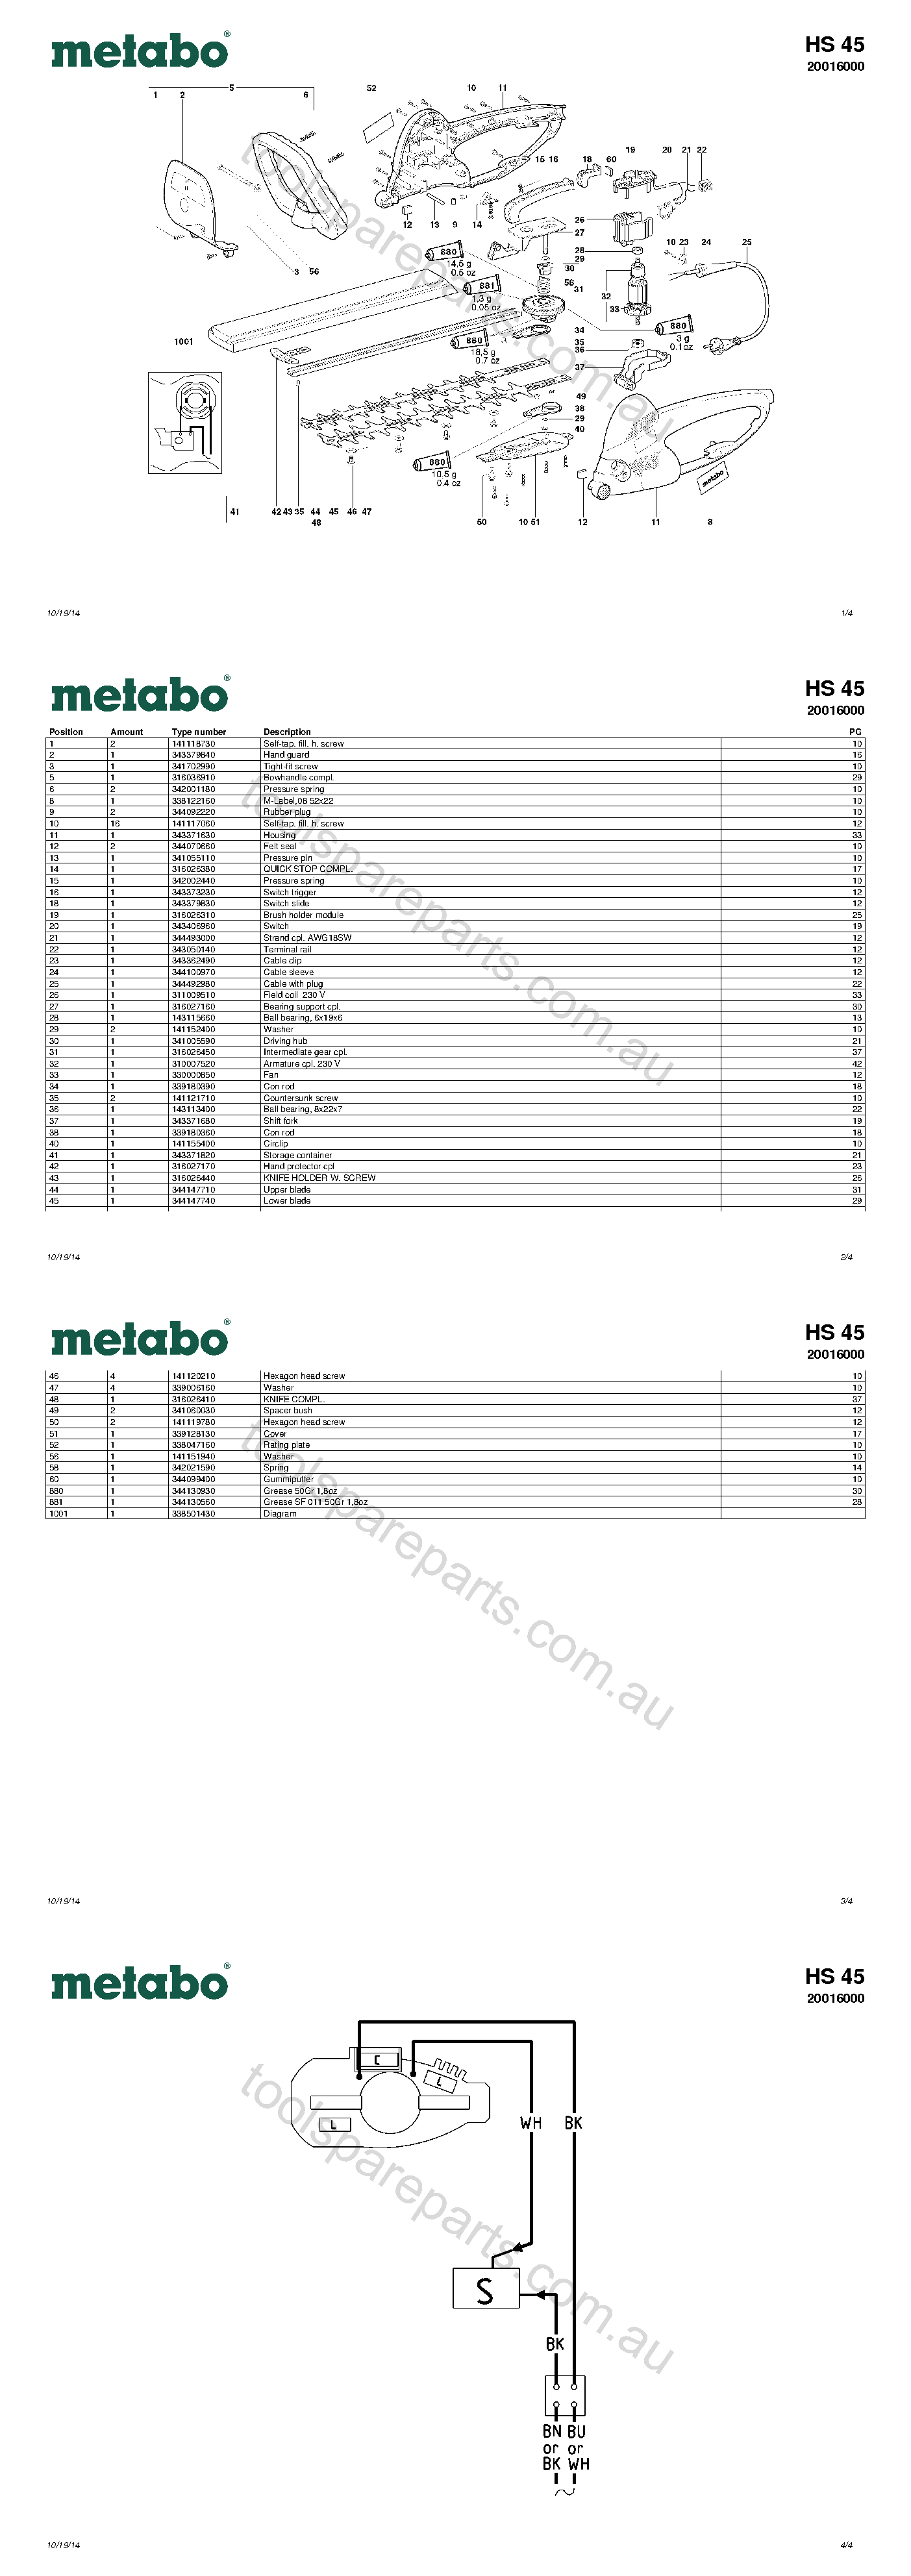 Metabo HS 45 20016000  Diagram 1